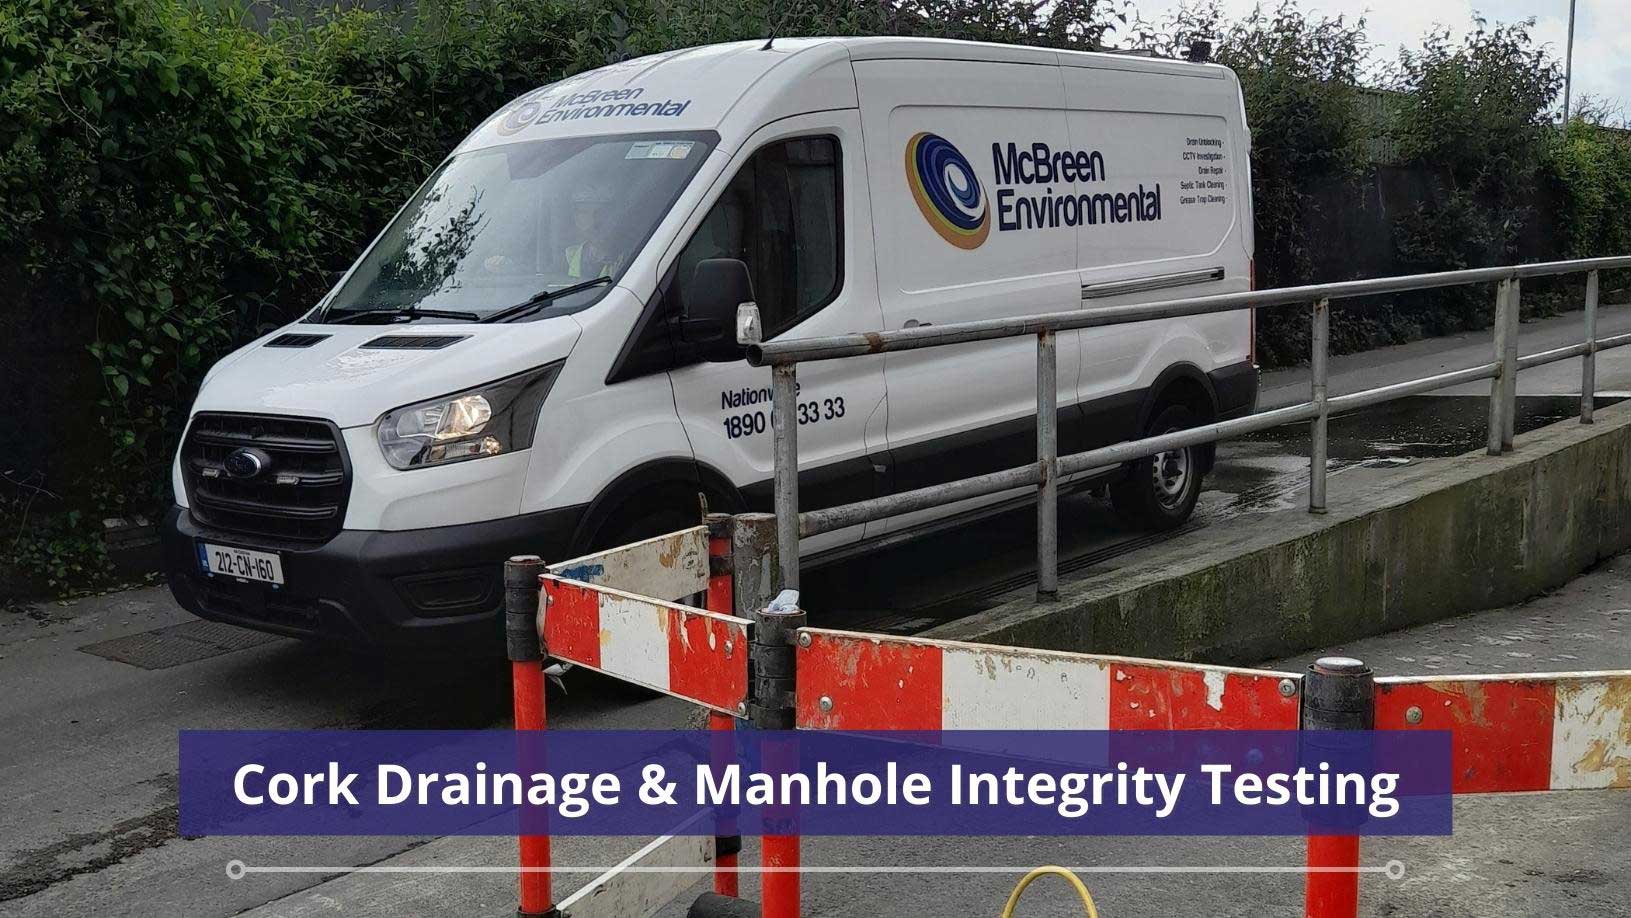 Cork Drainage & Manhole Integrity Testing